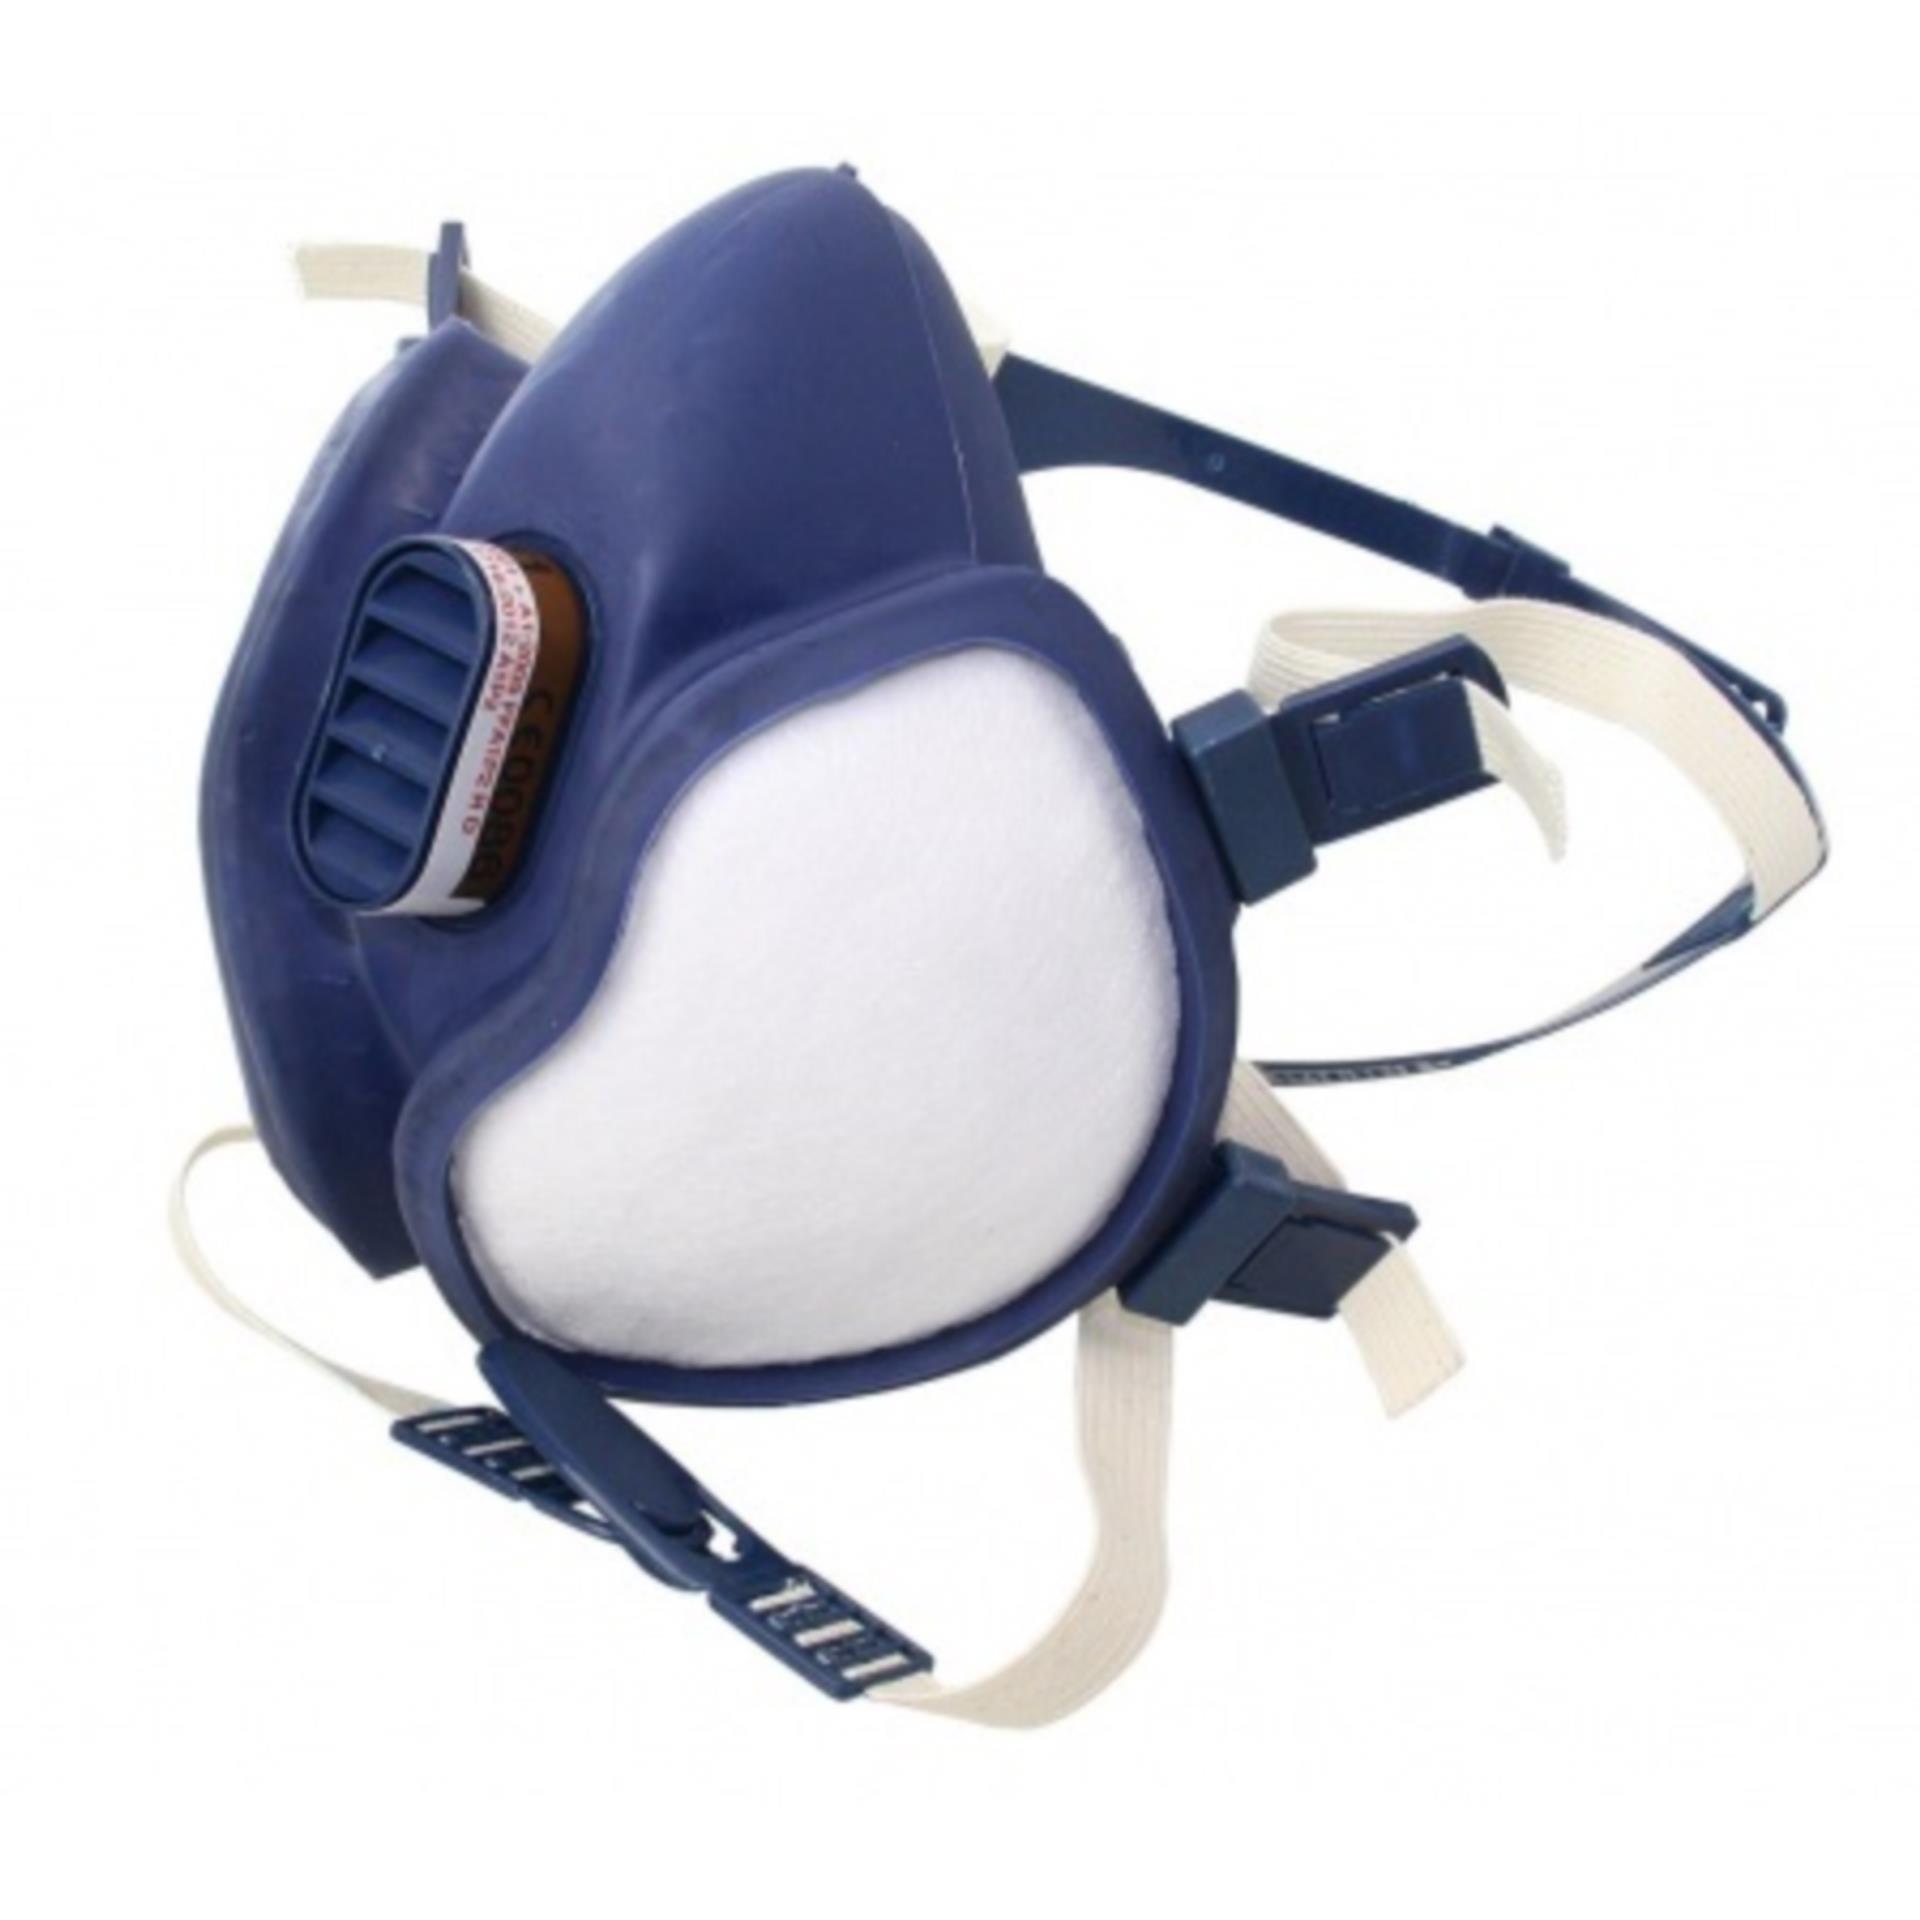 Atemschutz Maske Gasfiltrierend 3M